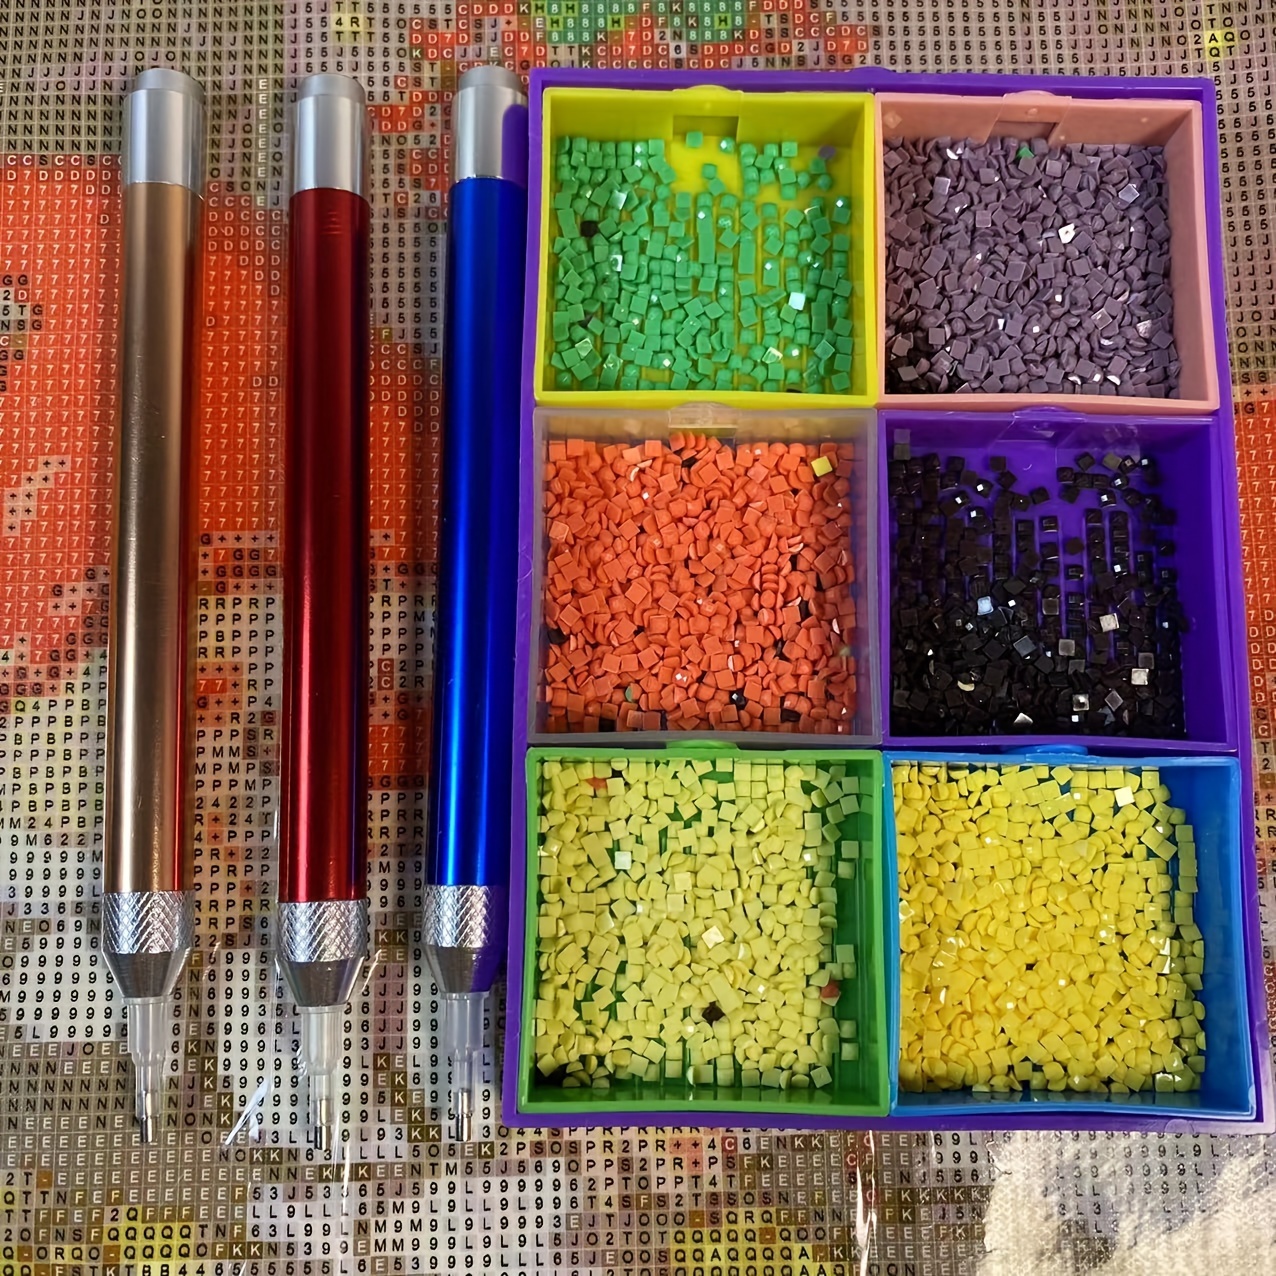 Diy Diamond Painting Pen Kits Led Lighting Point Drill Pen - Temu